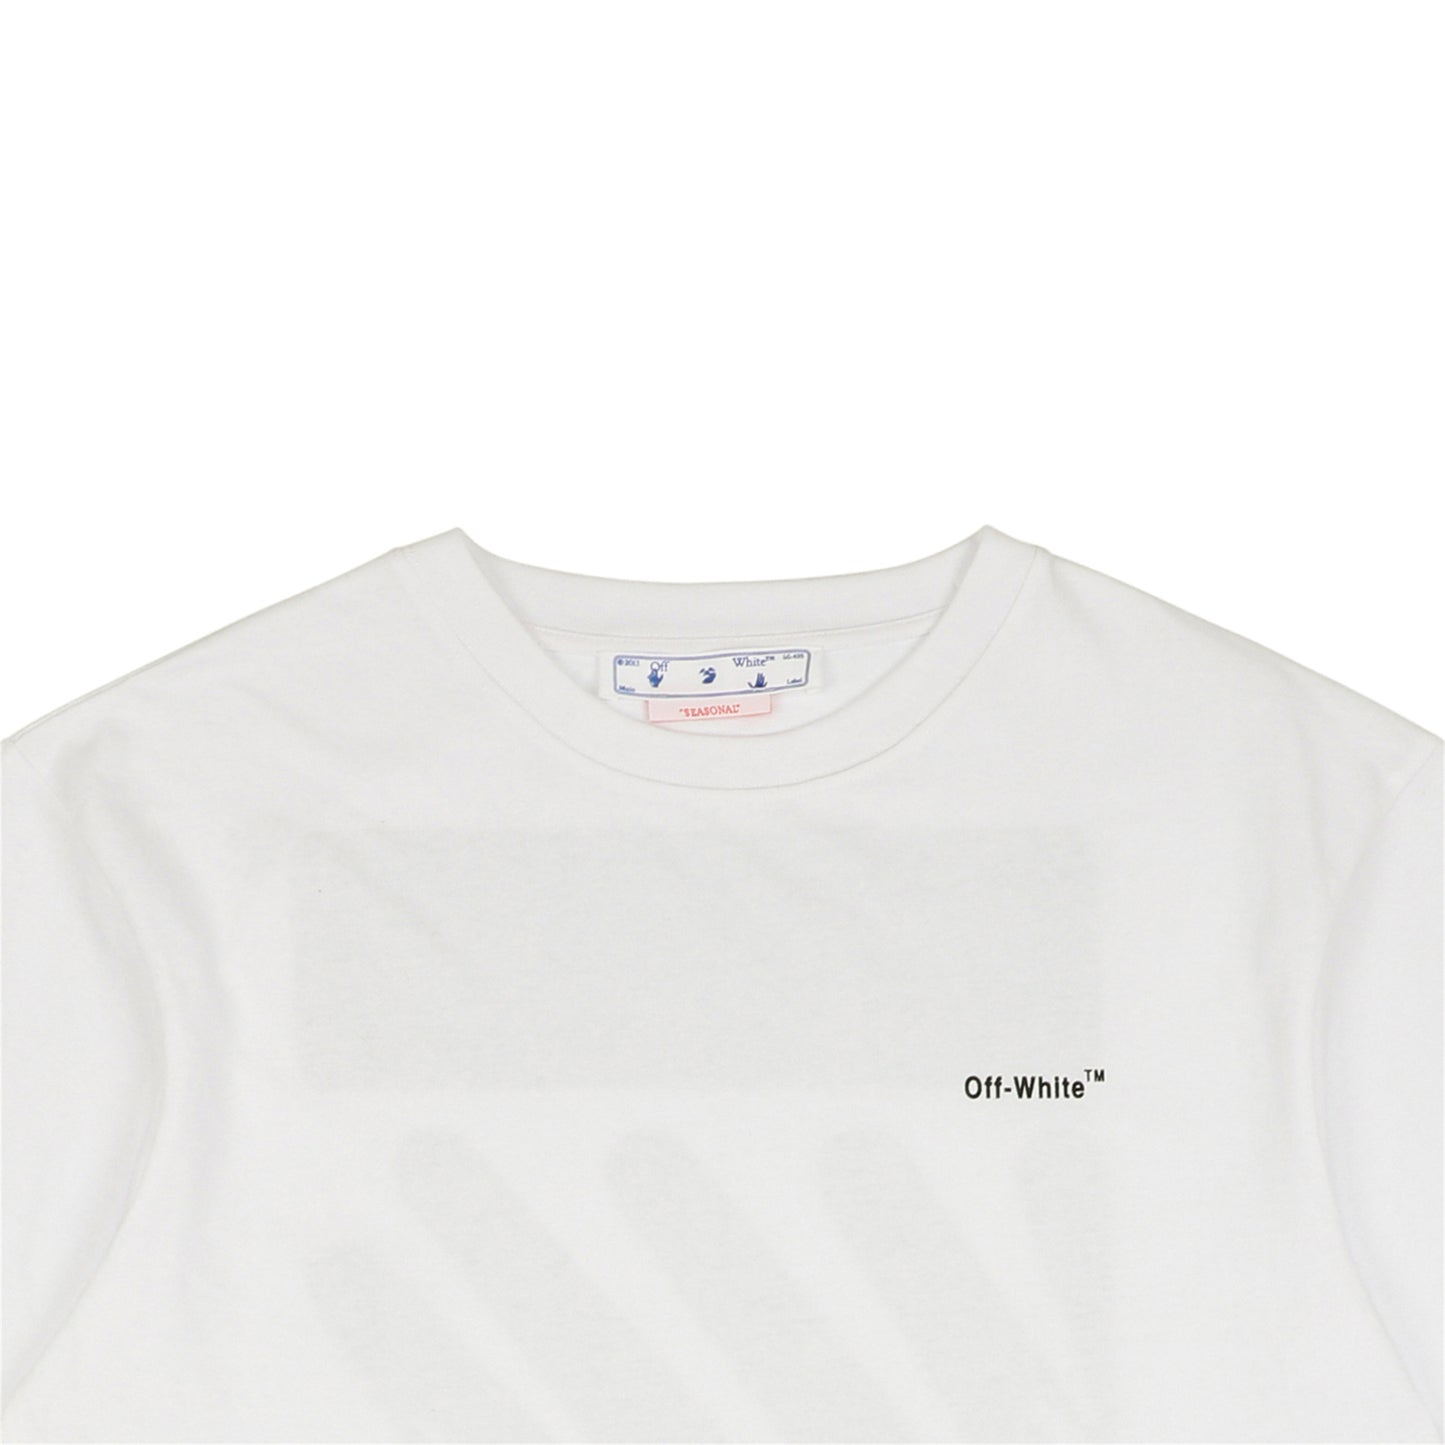 OW White T-Shirt 3